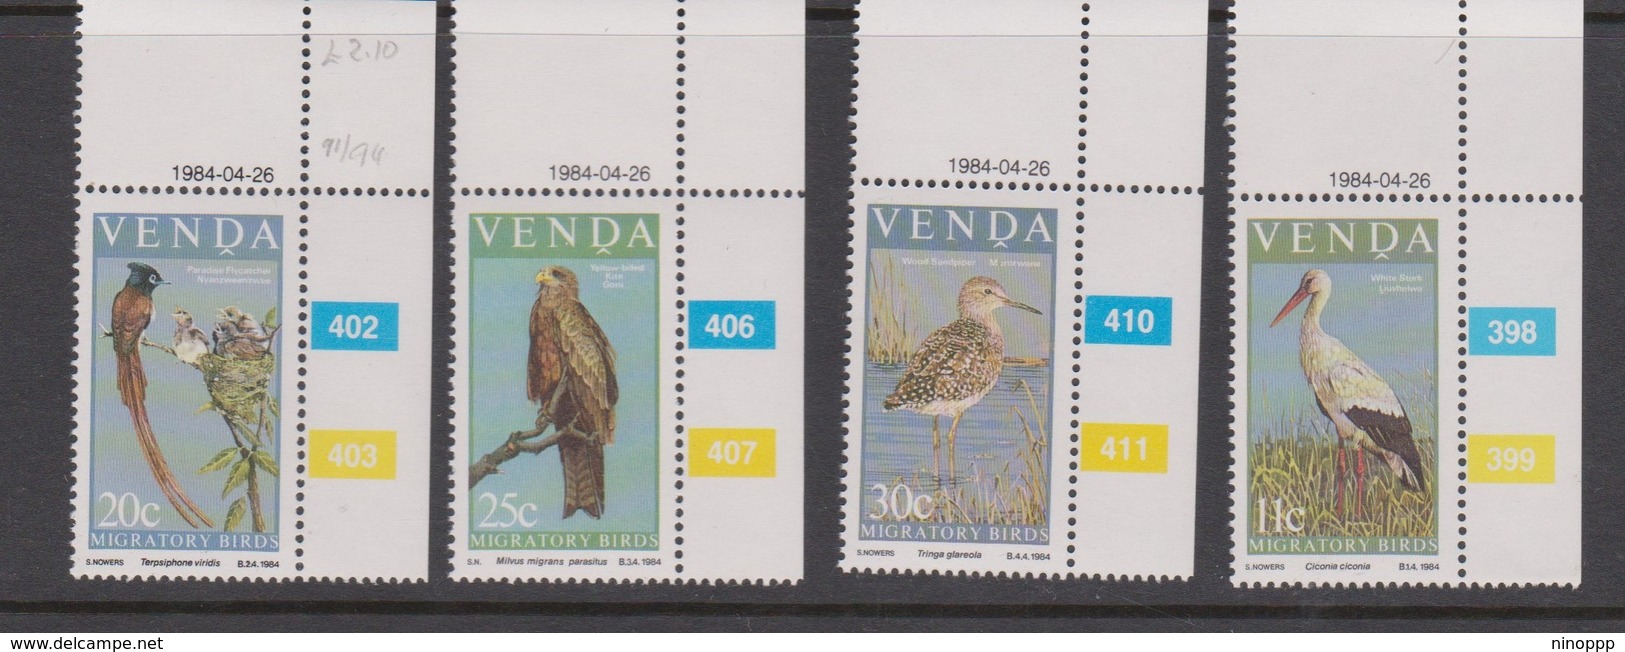 South Africa-Venda SG 91-94 1984 Migratory Birds, Mint Never Hinged - Venda